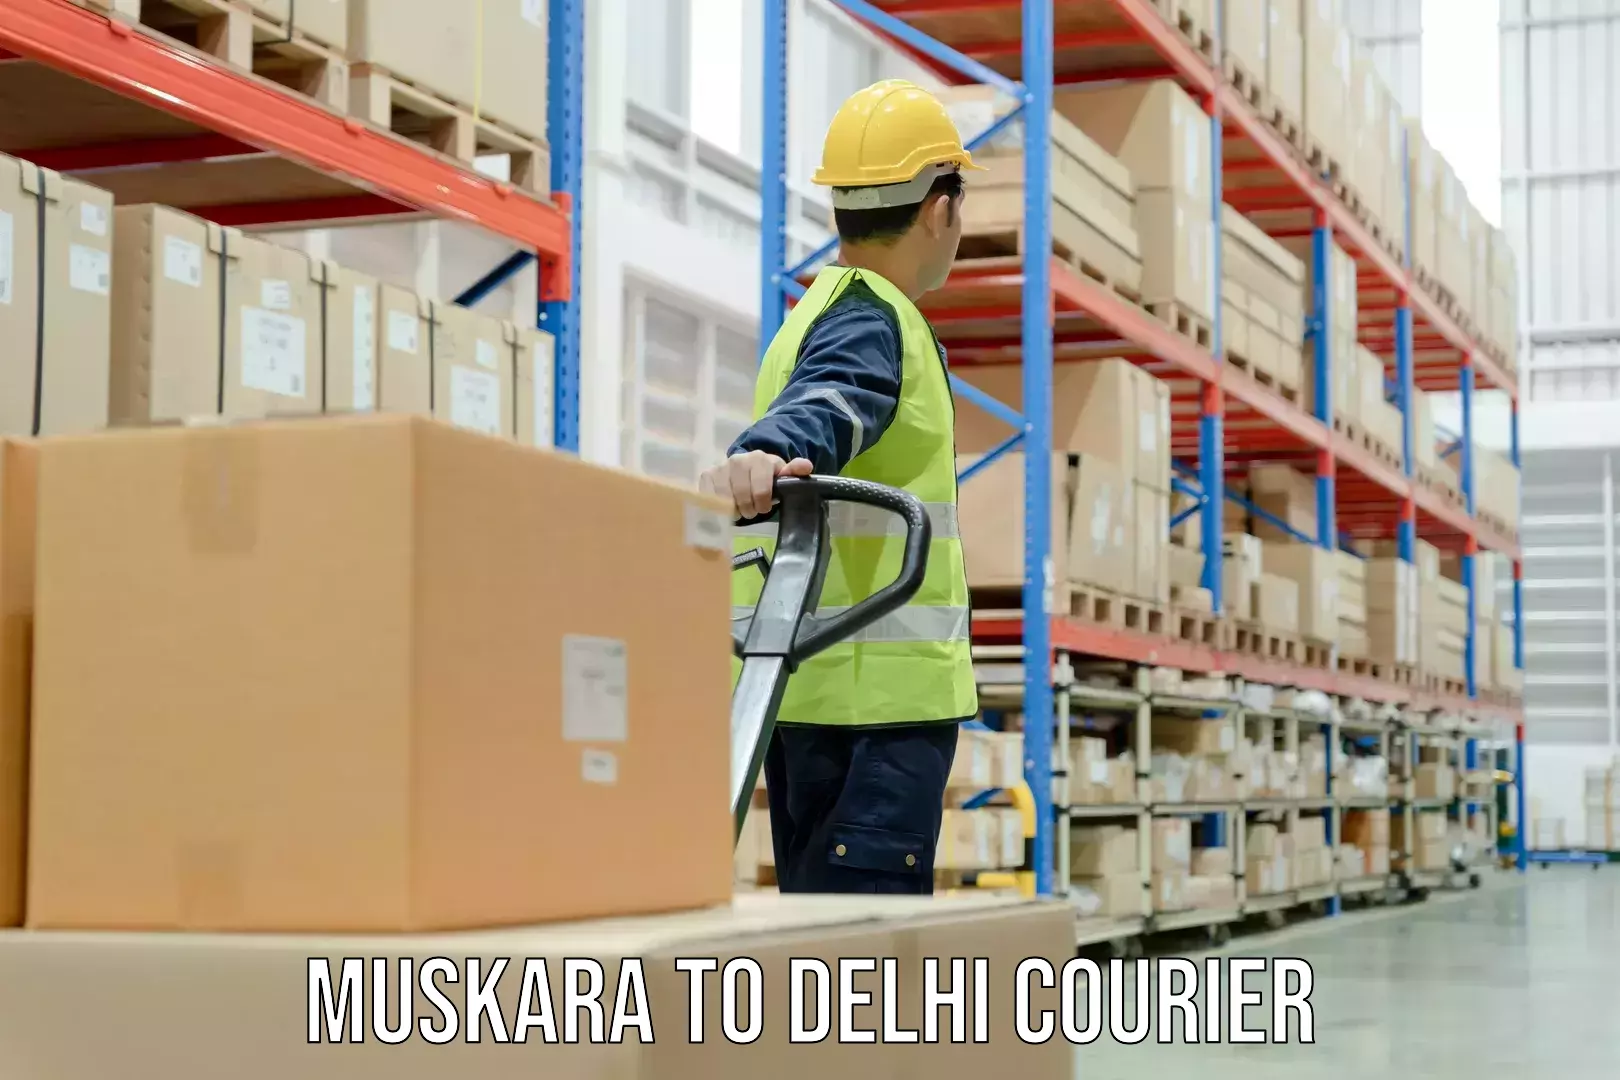 International logistics solutions Muskara to IIT Delhi